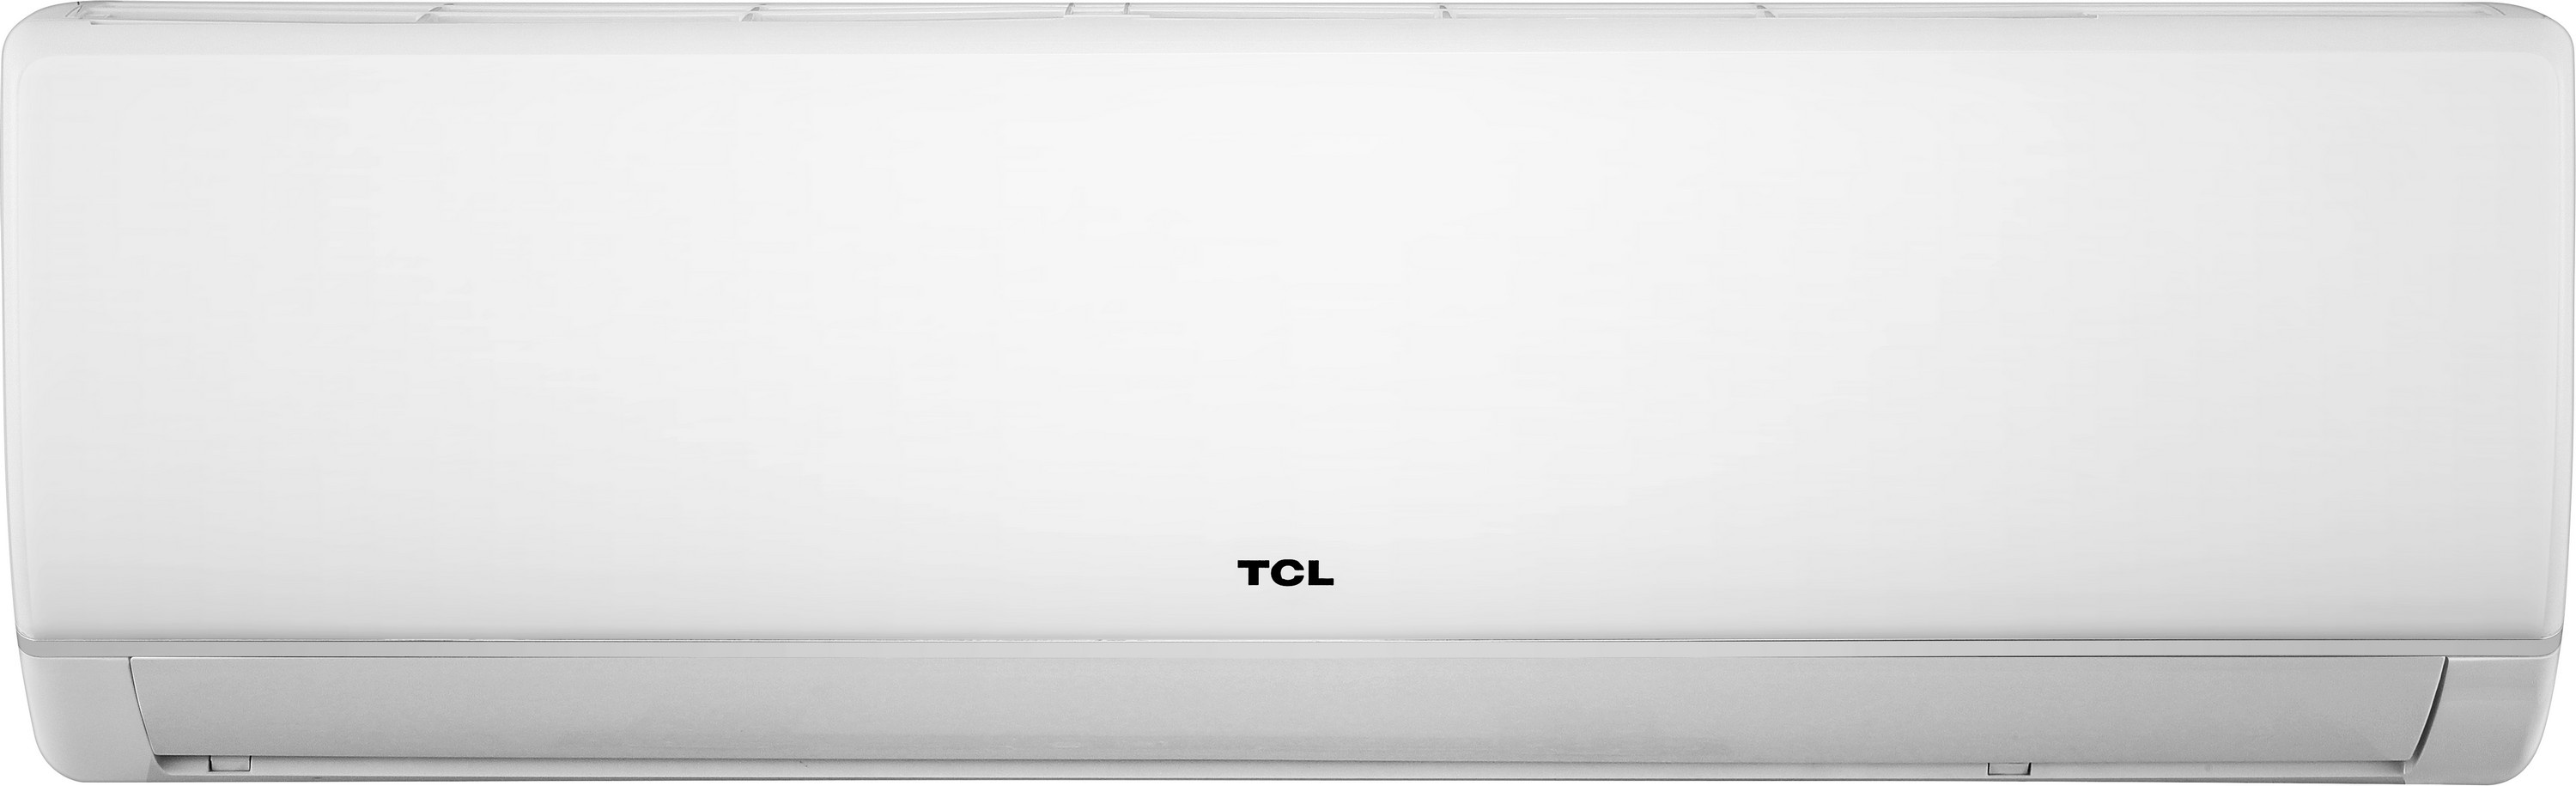 Кондиционер сплит-система TCL Miracle Inverter TAC-09CHSA/VB цена 0.00 грн - фотография 2